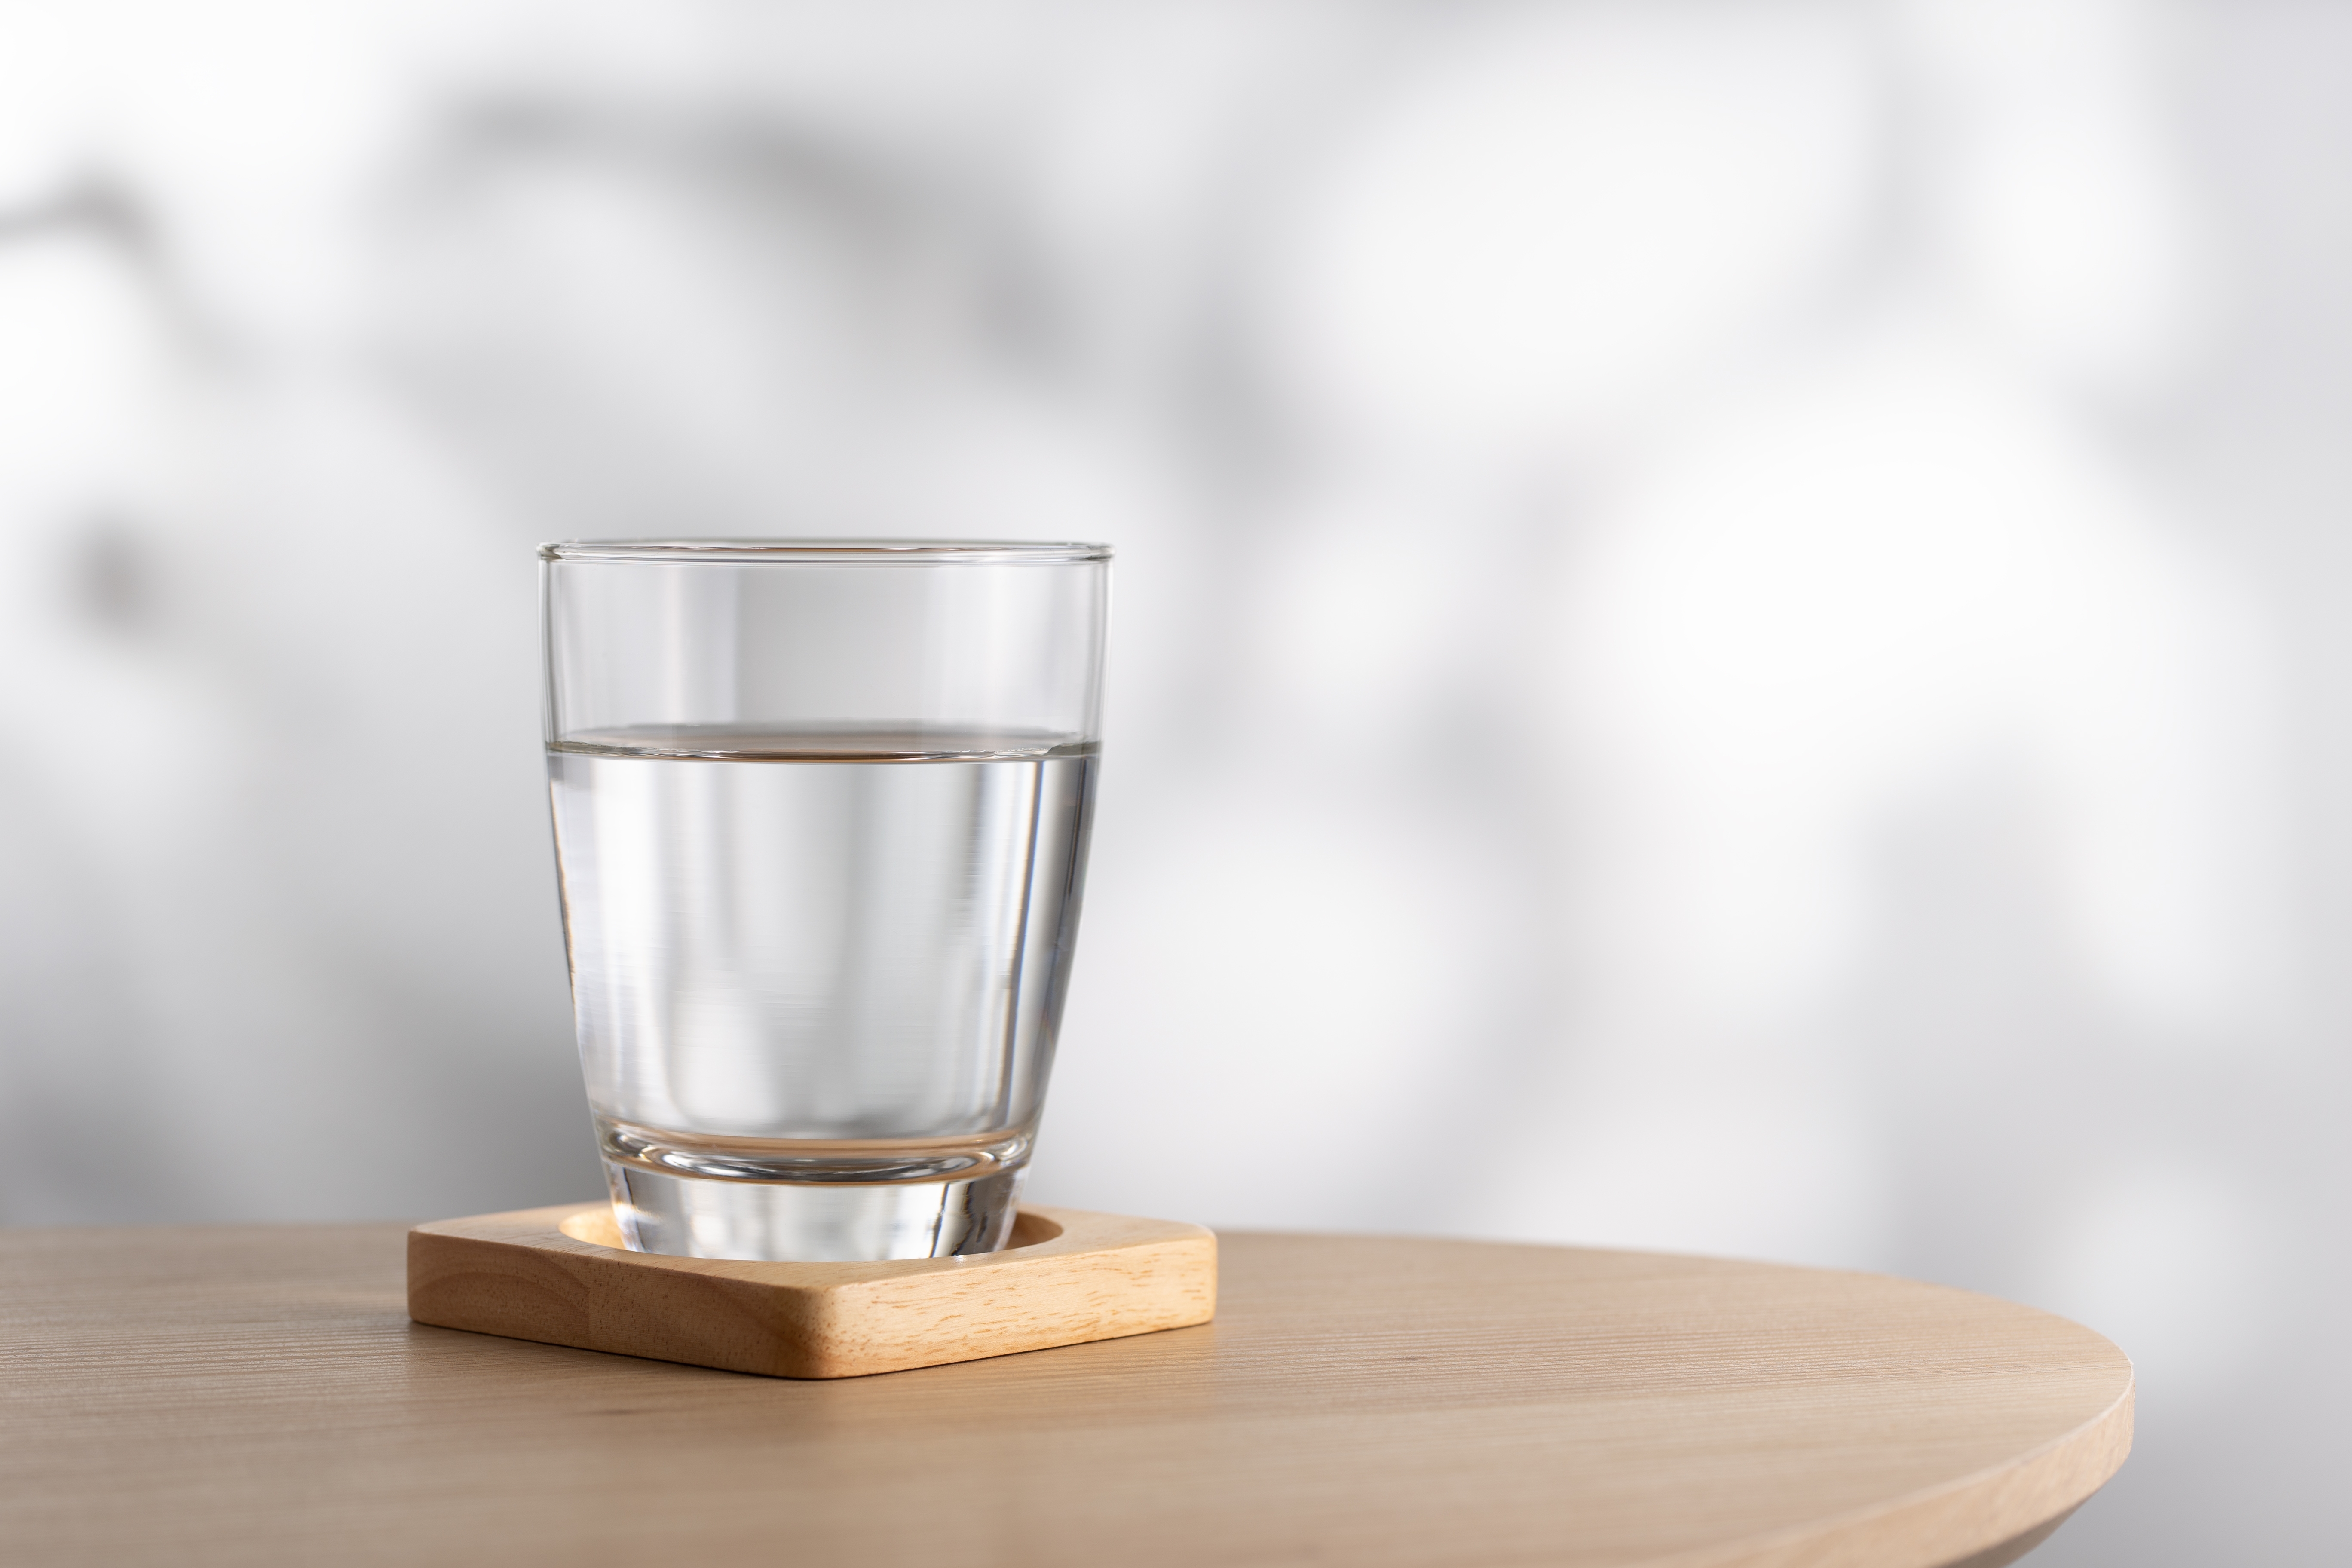 Vaso transparente con agua | Fuente: Shutterstock